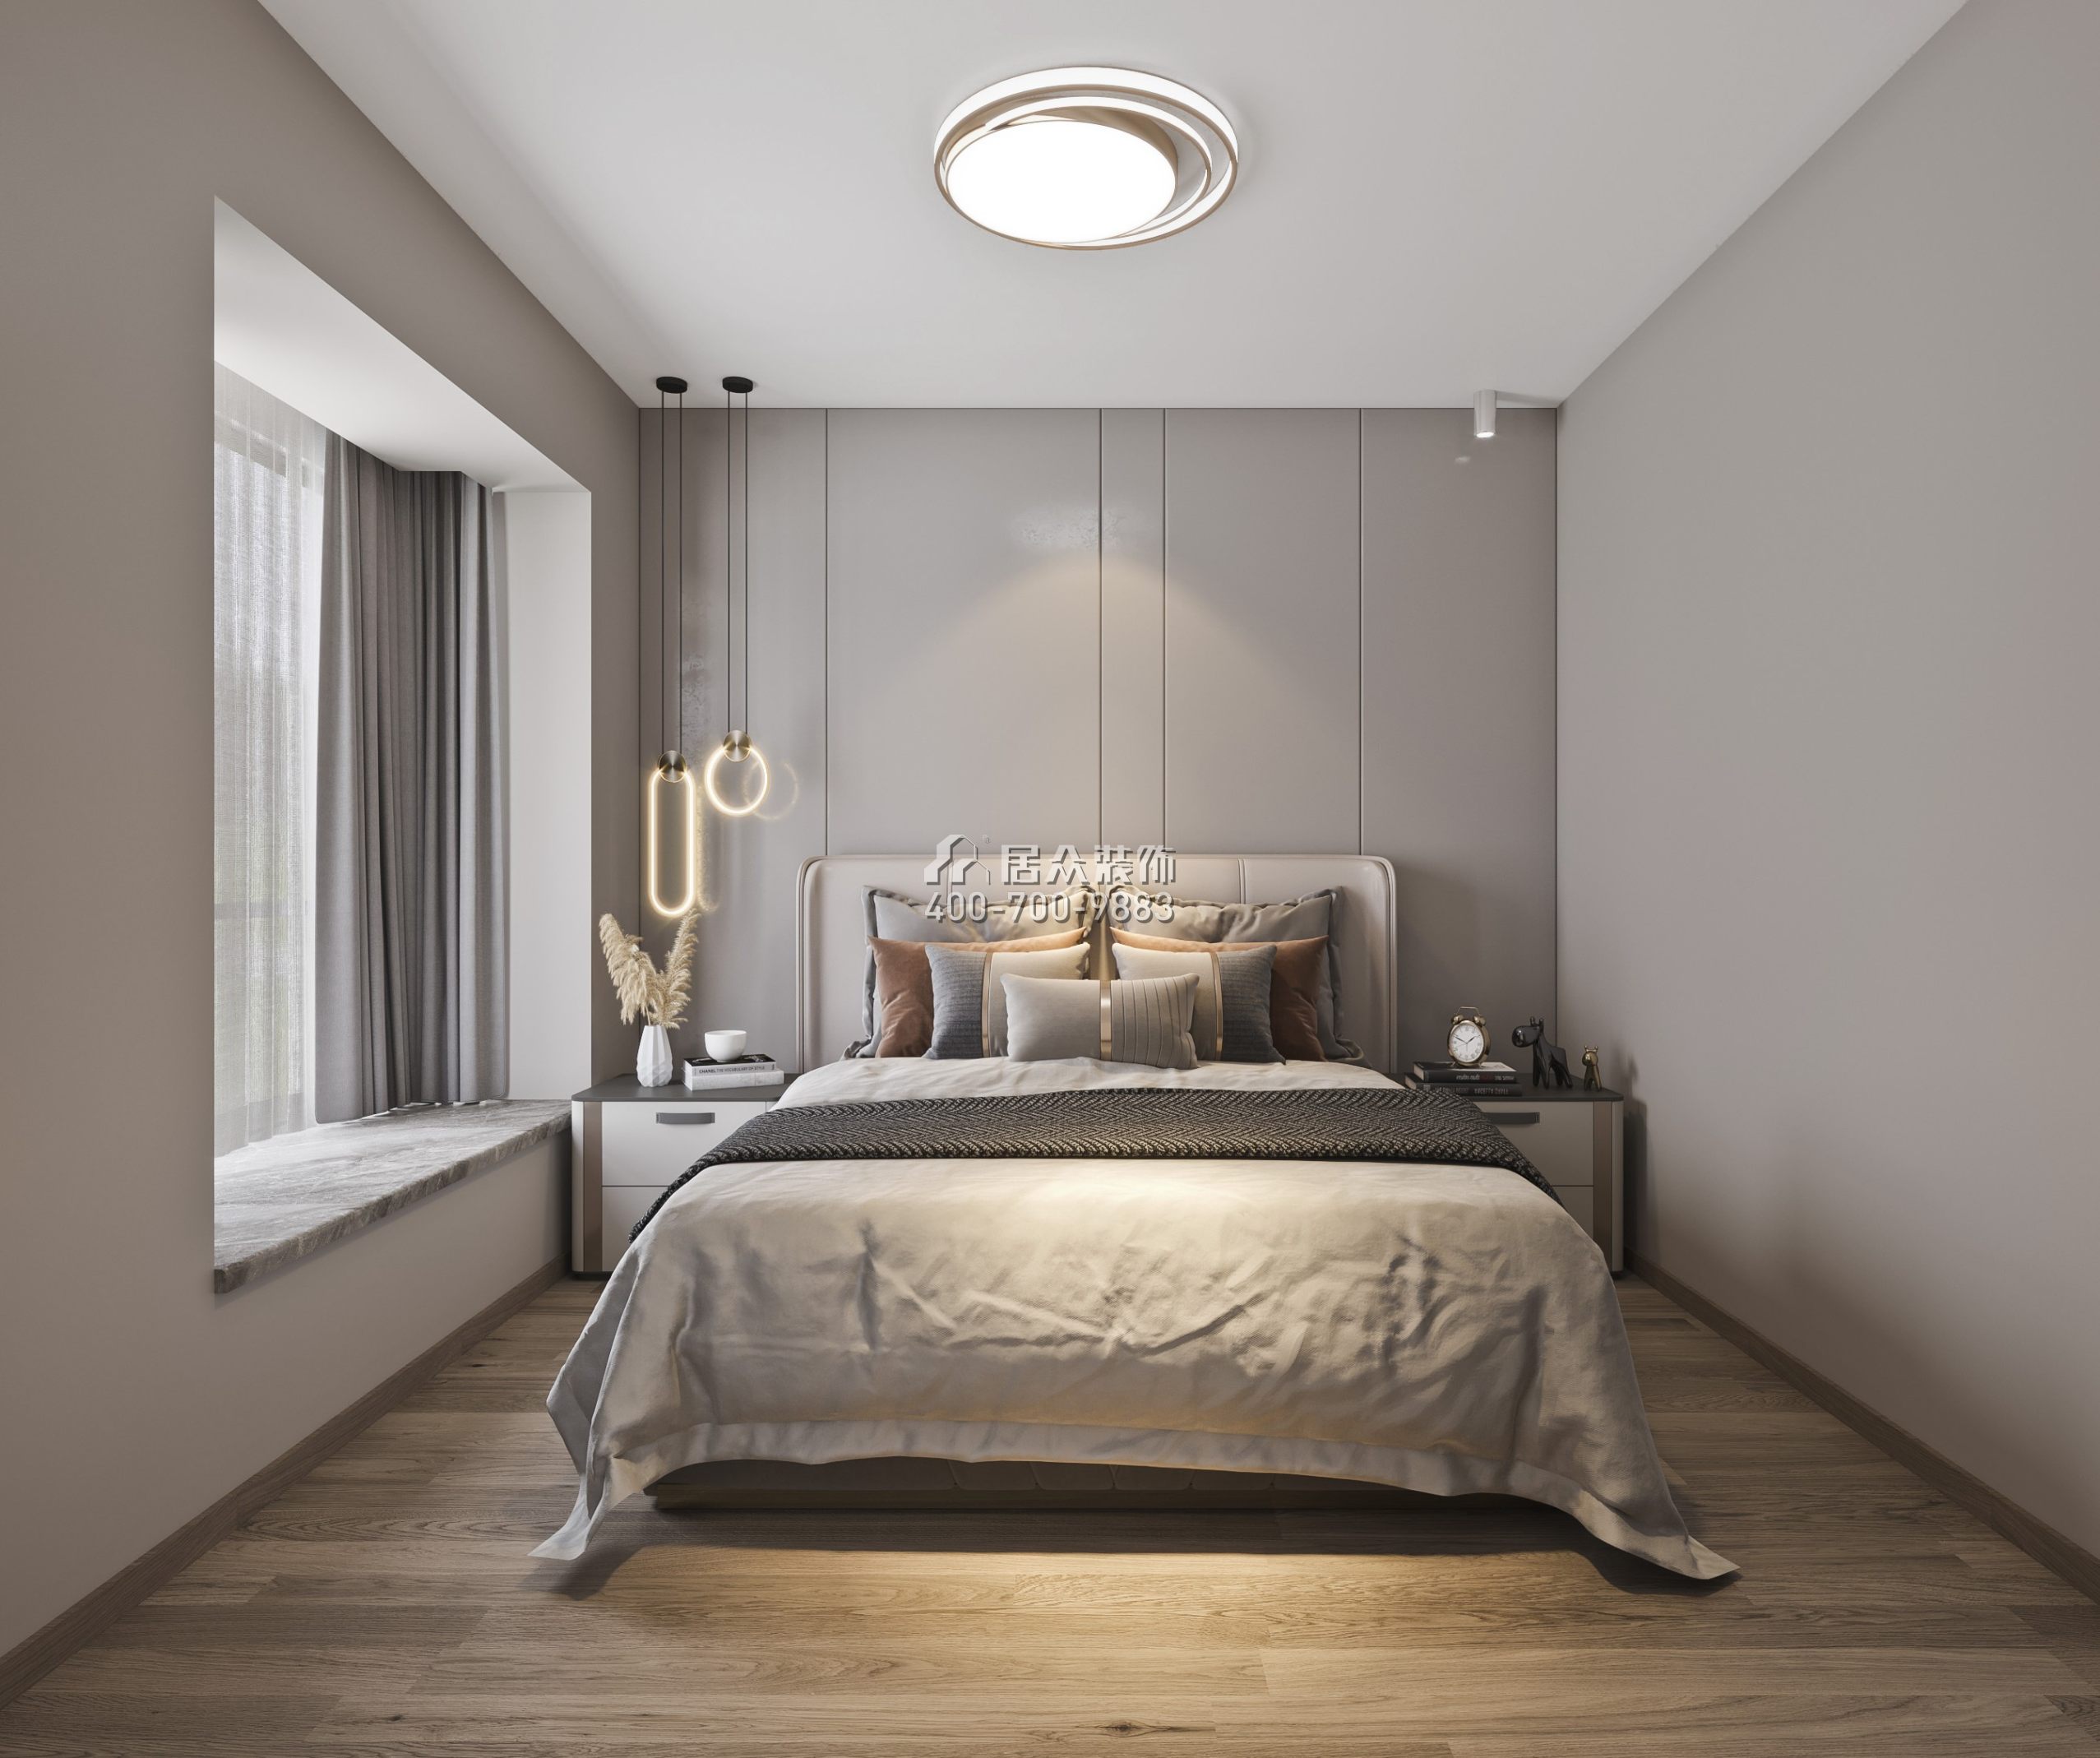 蔚蓝海岸二期120平方米现代简约风格平层户型卧室装修效果图